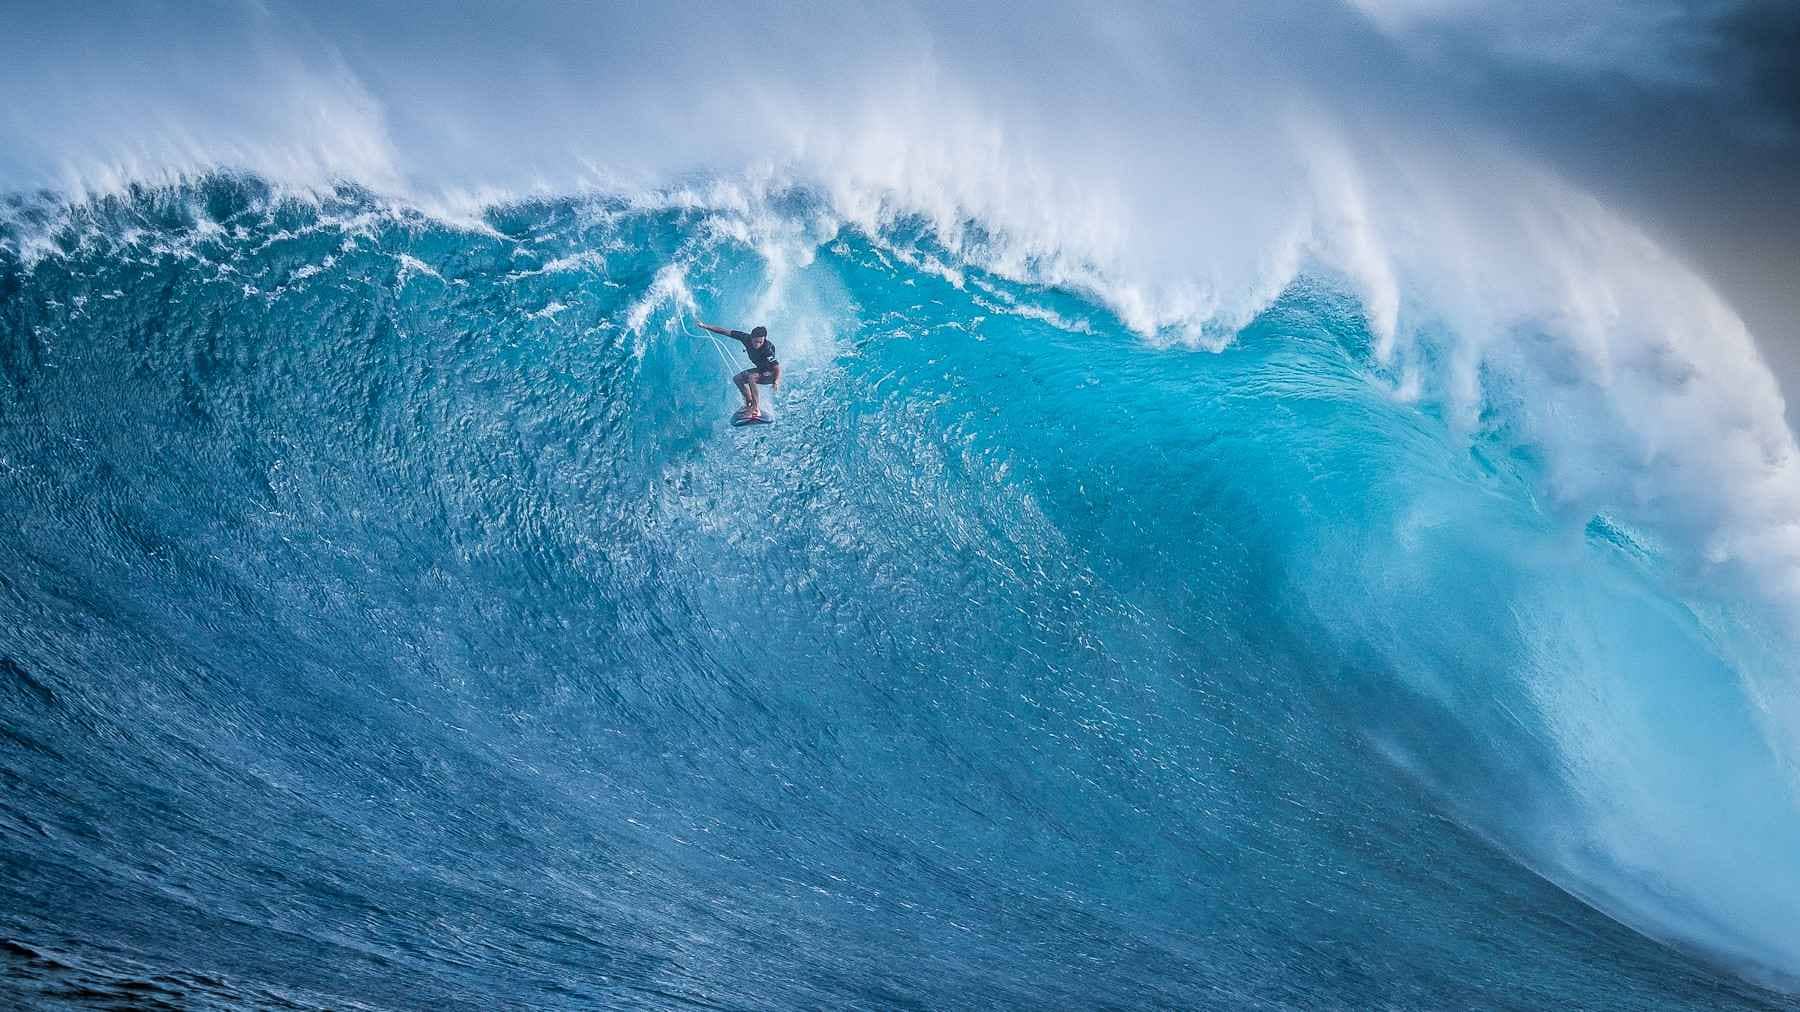 Kai Lenny surfing large wave